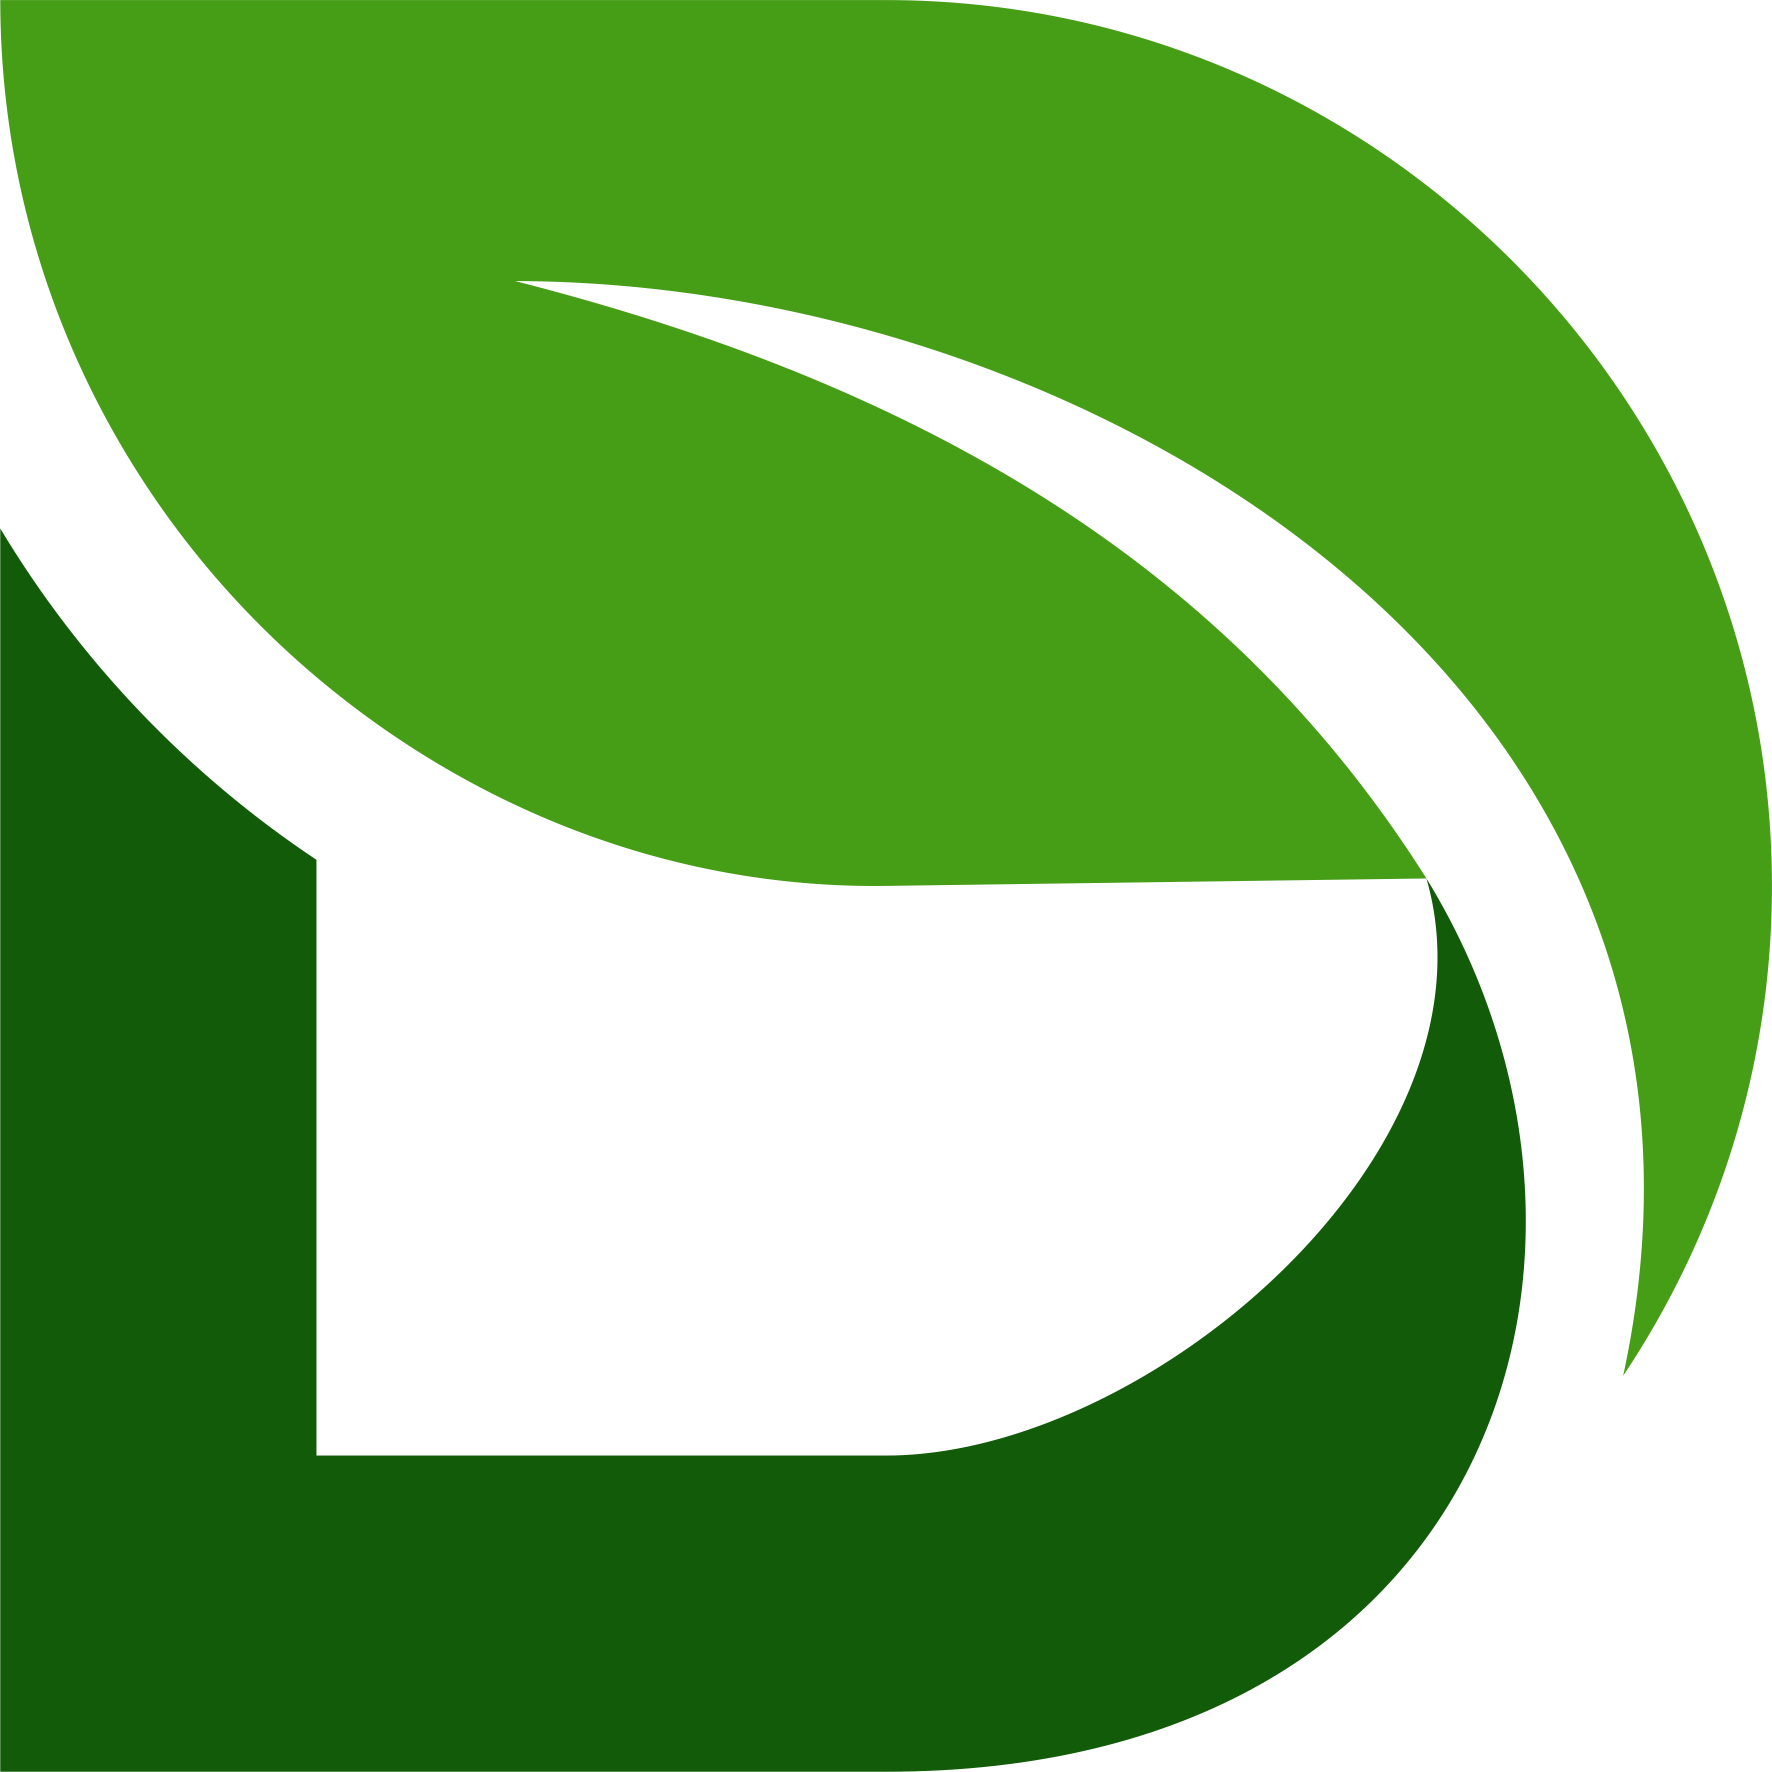 Dimitra Logo